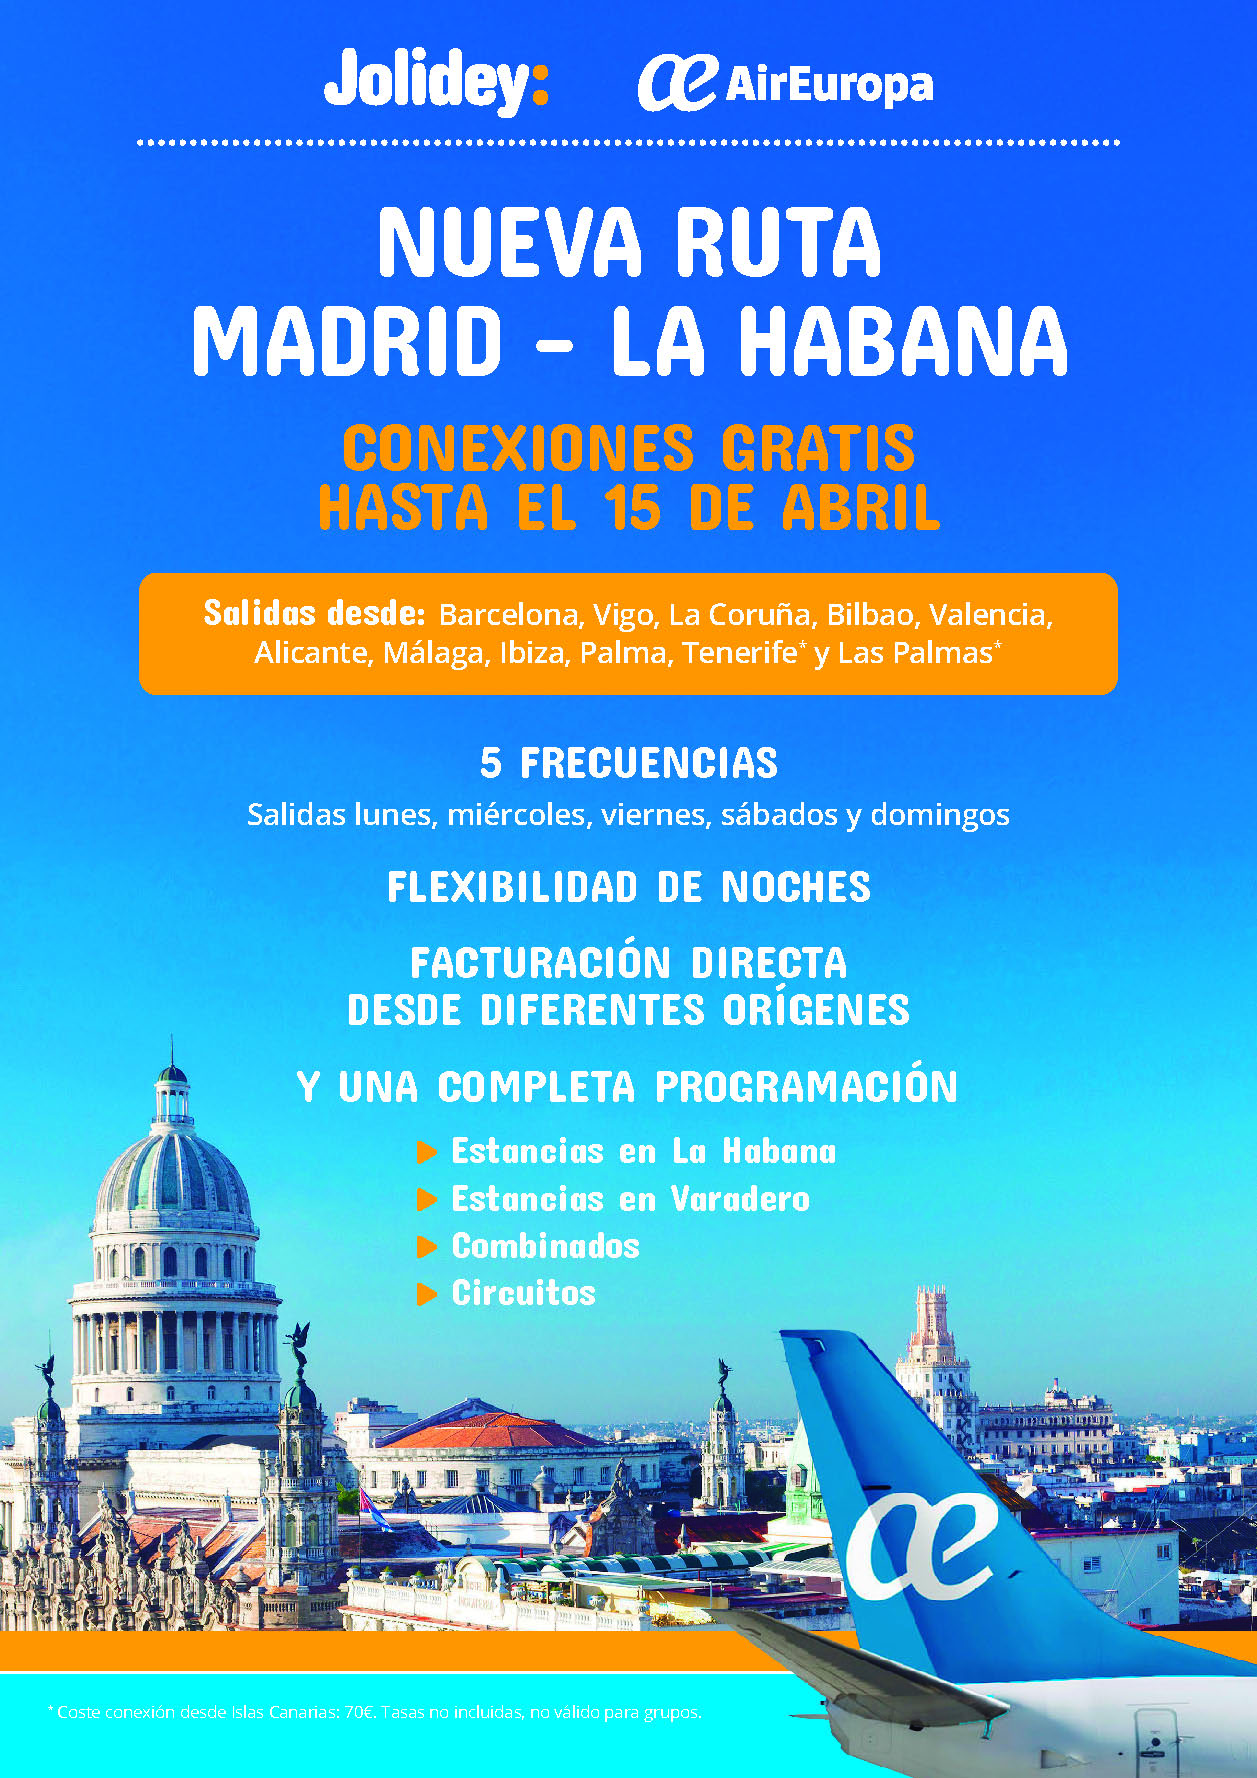 Oferta Jolidey Estancias Combinados y Circuitos Cuba 9 dias salidas 2024 facturacion directa desde Peninsula Baleares y Canarias